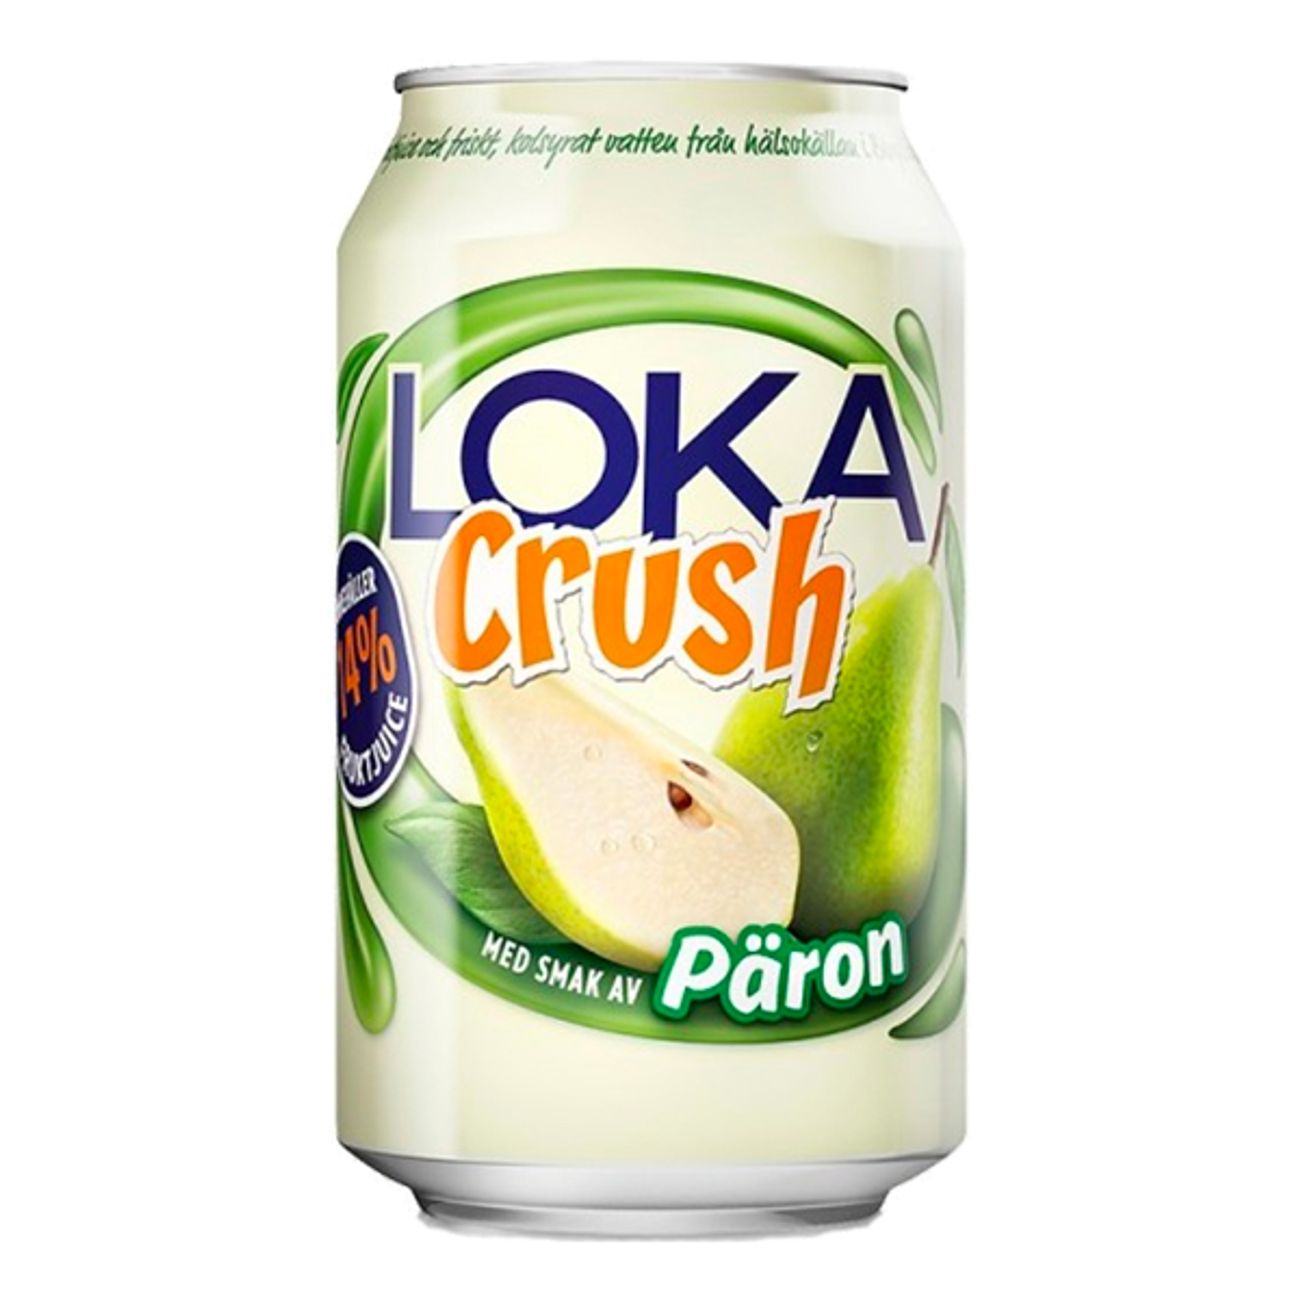 loka-crush-paron-74938-1